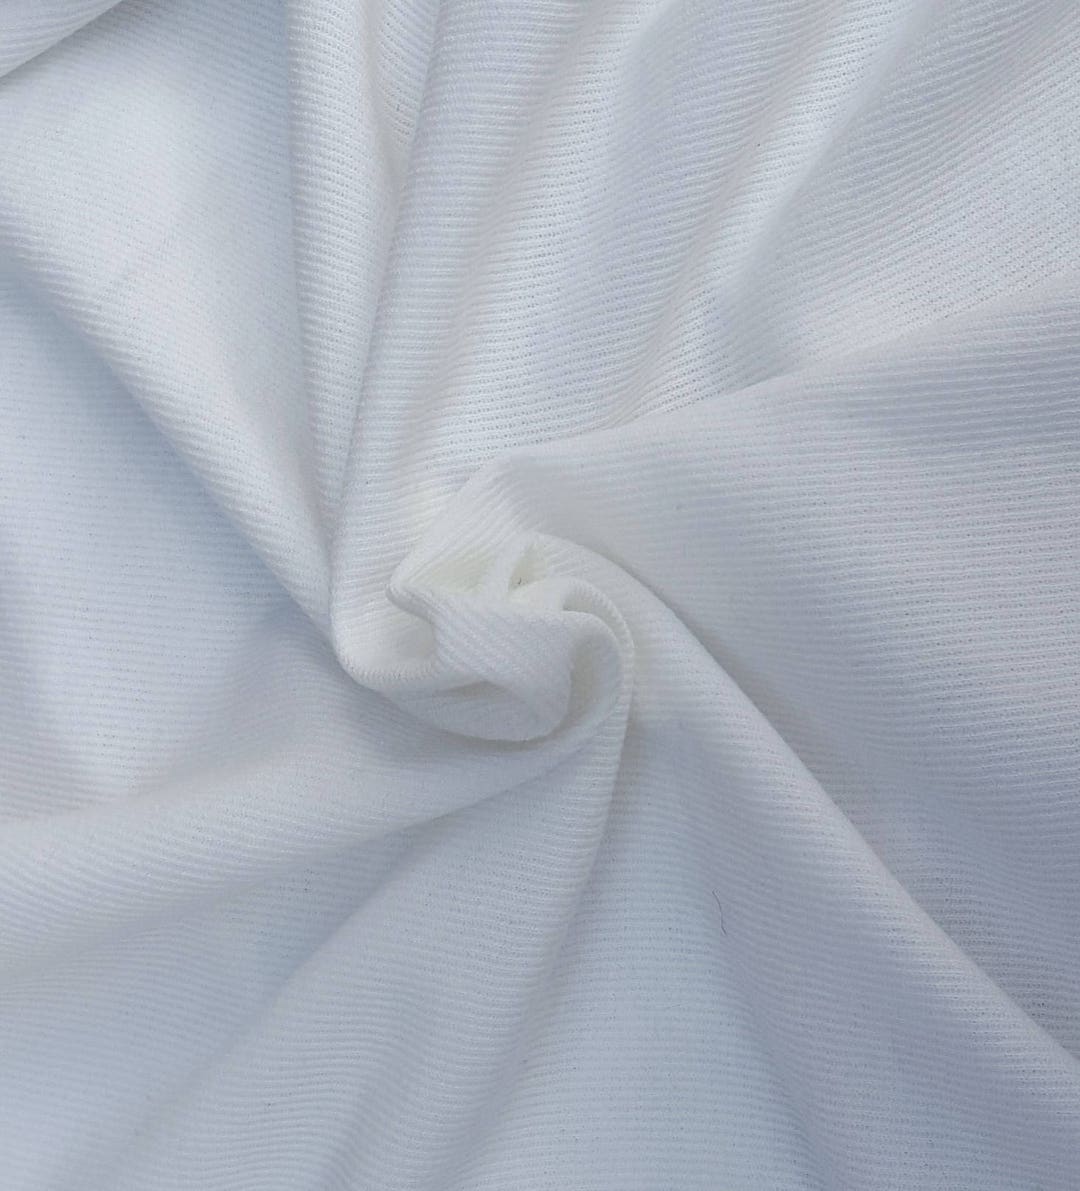 Tela para puños RIB 1x1 blanco Off-white (155 cm)